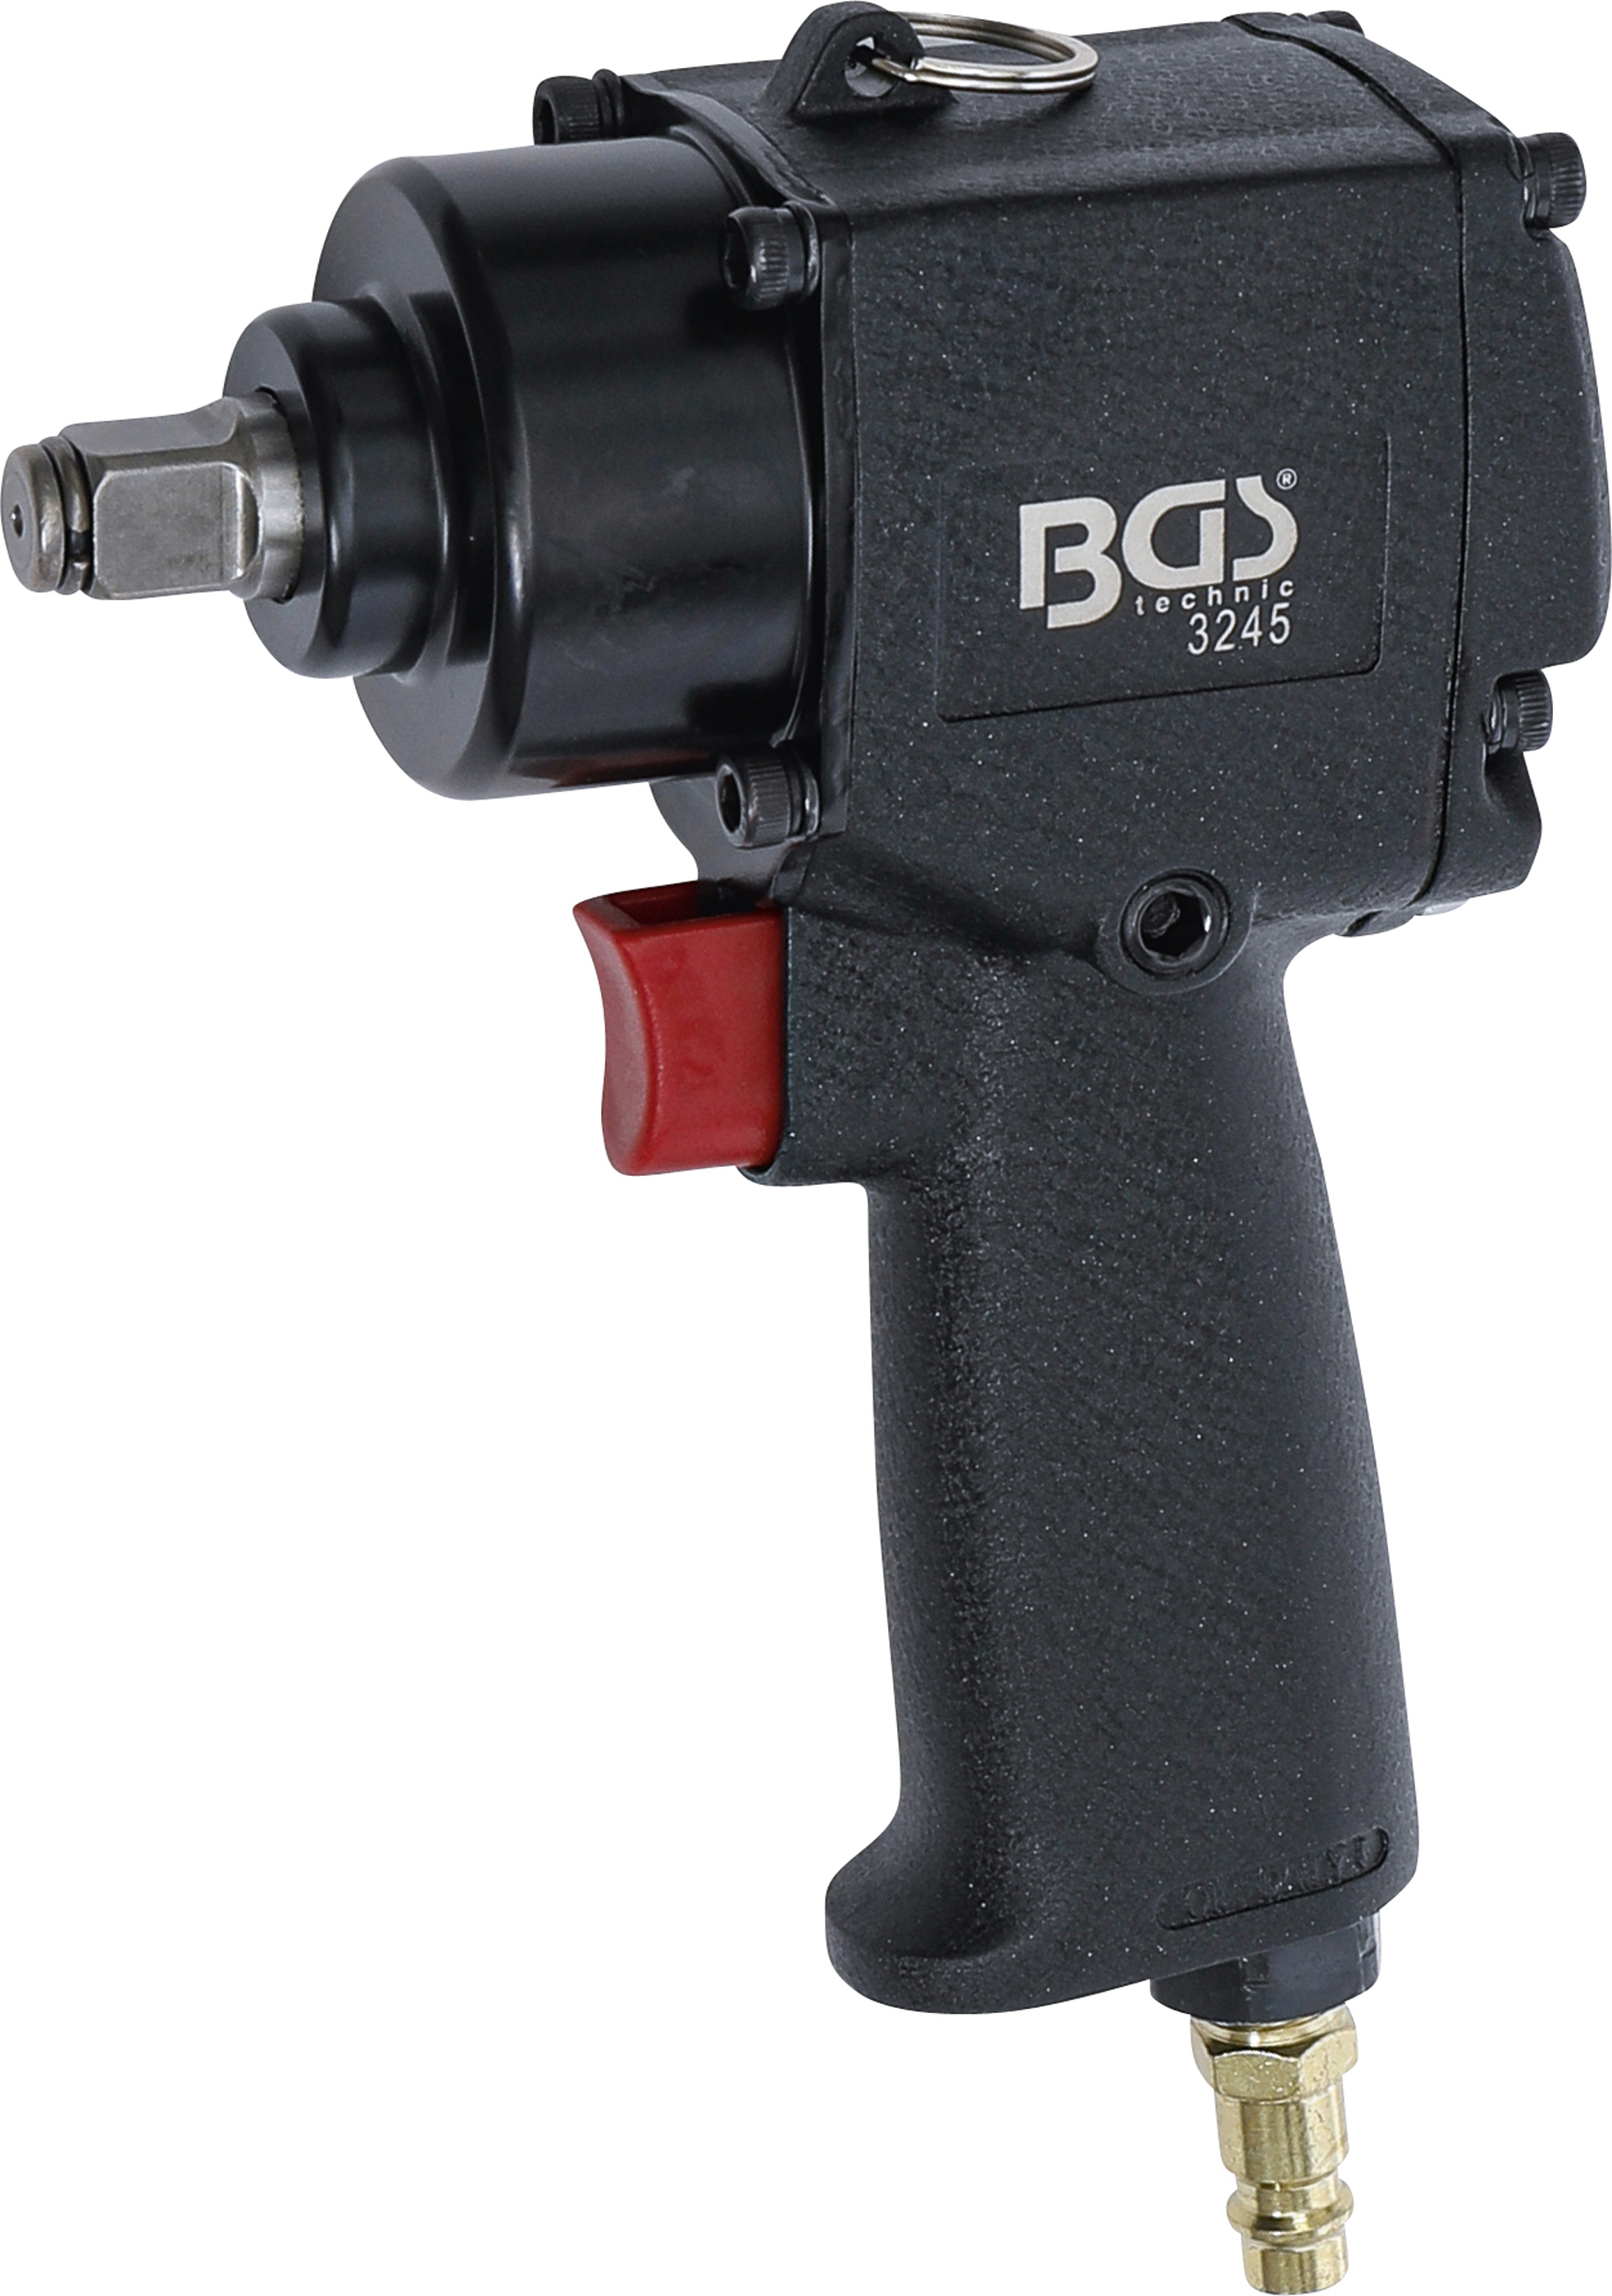 BGS Druckluft-Schlagschrauber | 12,5 mm (1/2") | 678 Nm